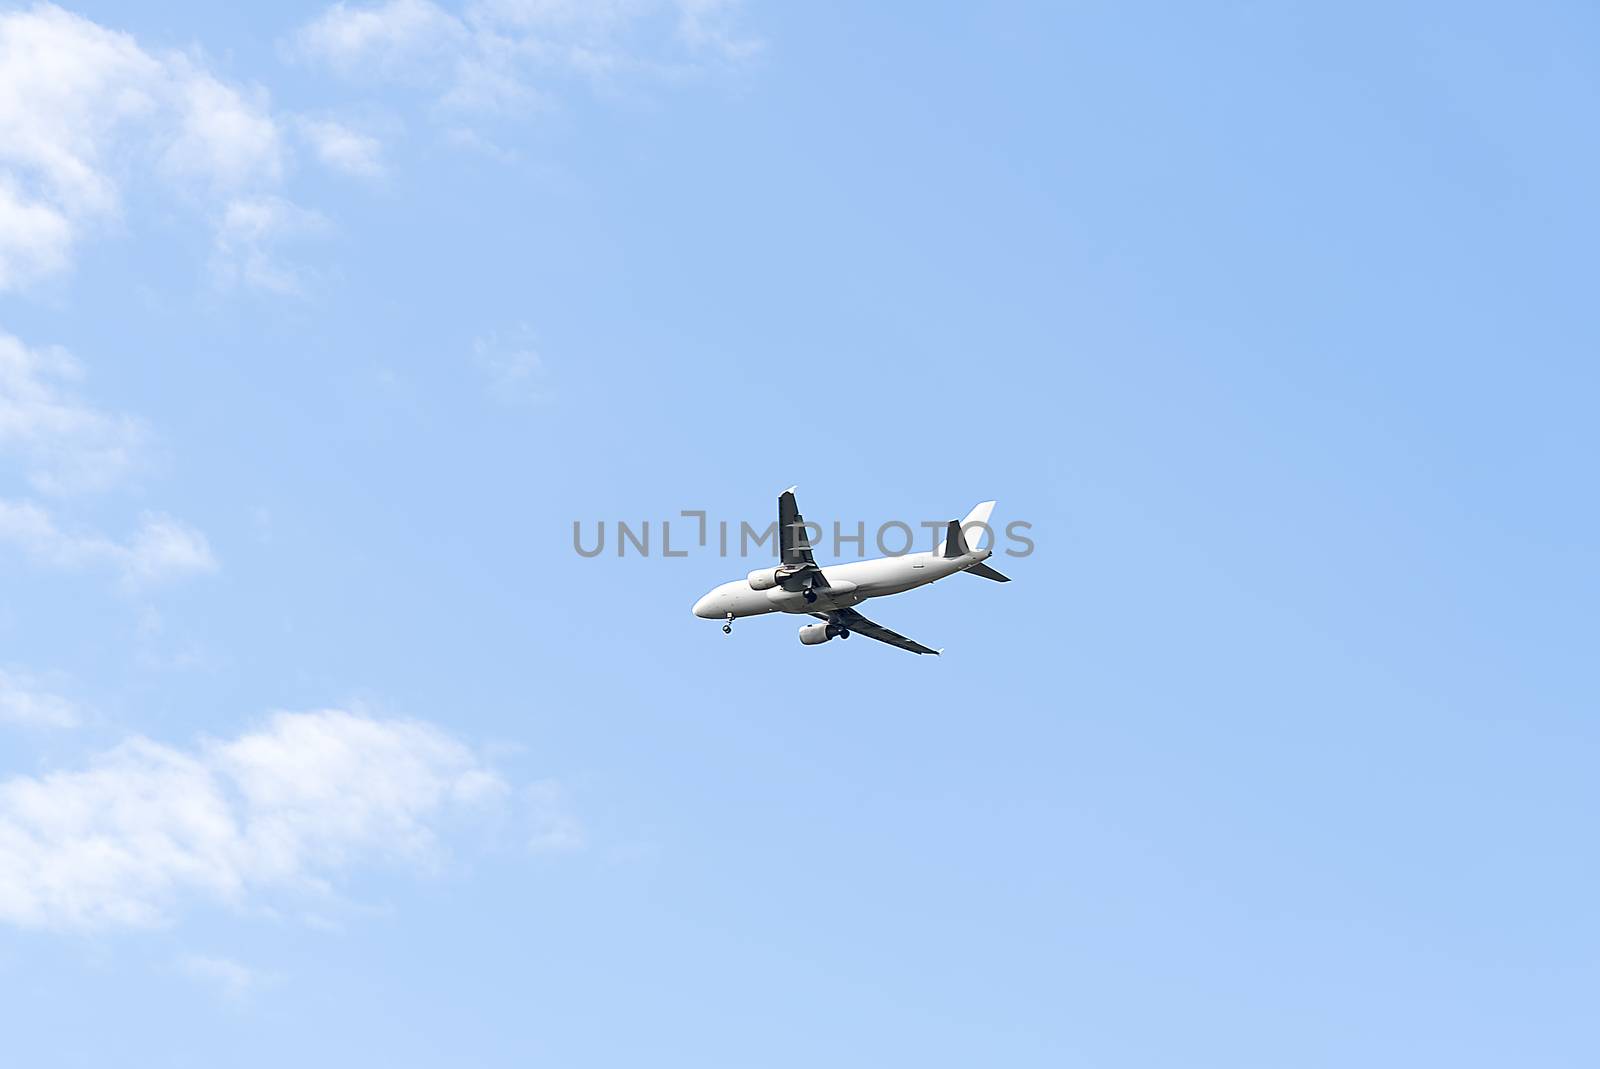 Jet plane flying in blue sky, preparing for landing